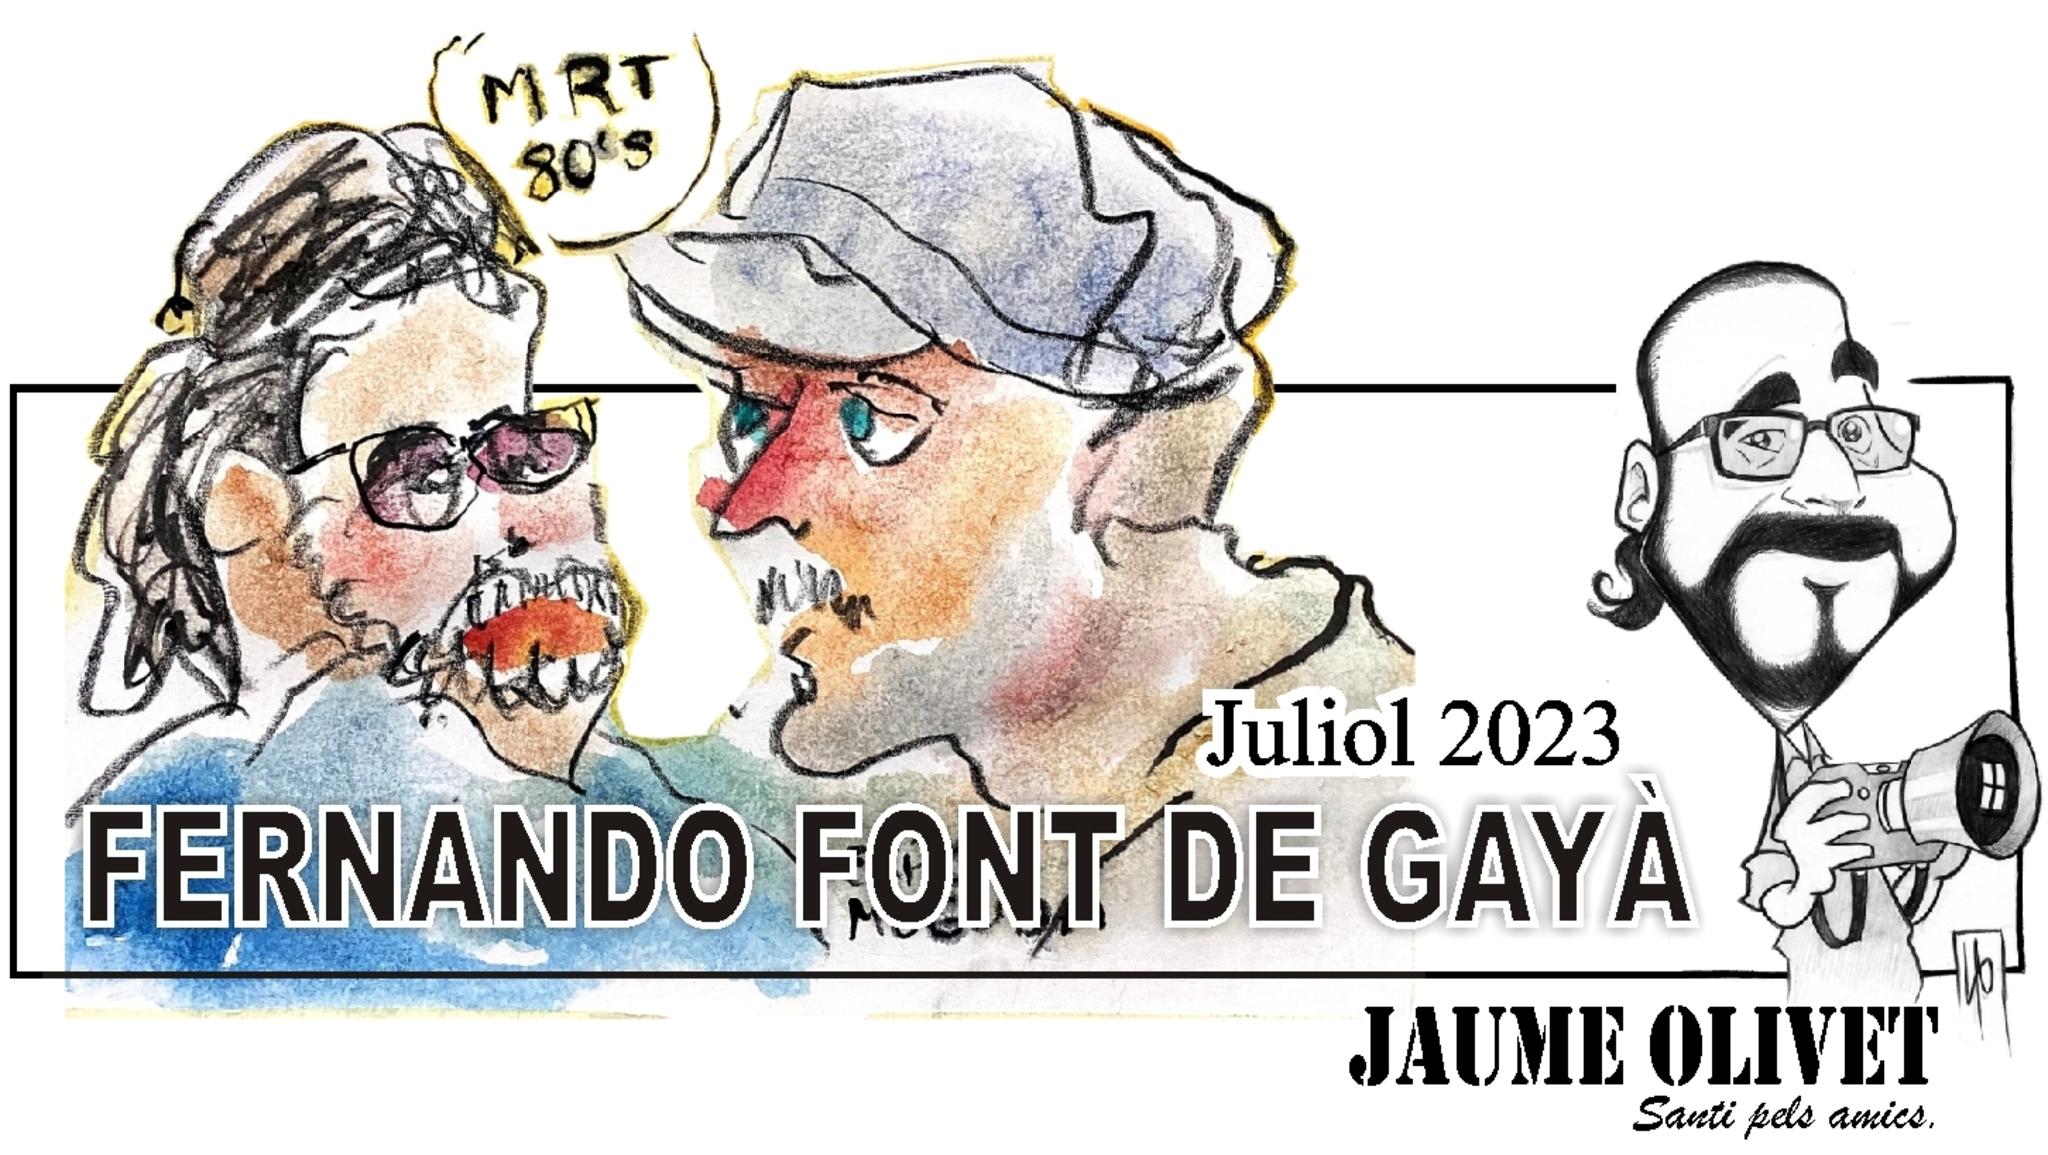  Fernando Font de Gay 2023